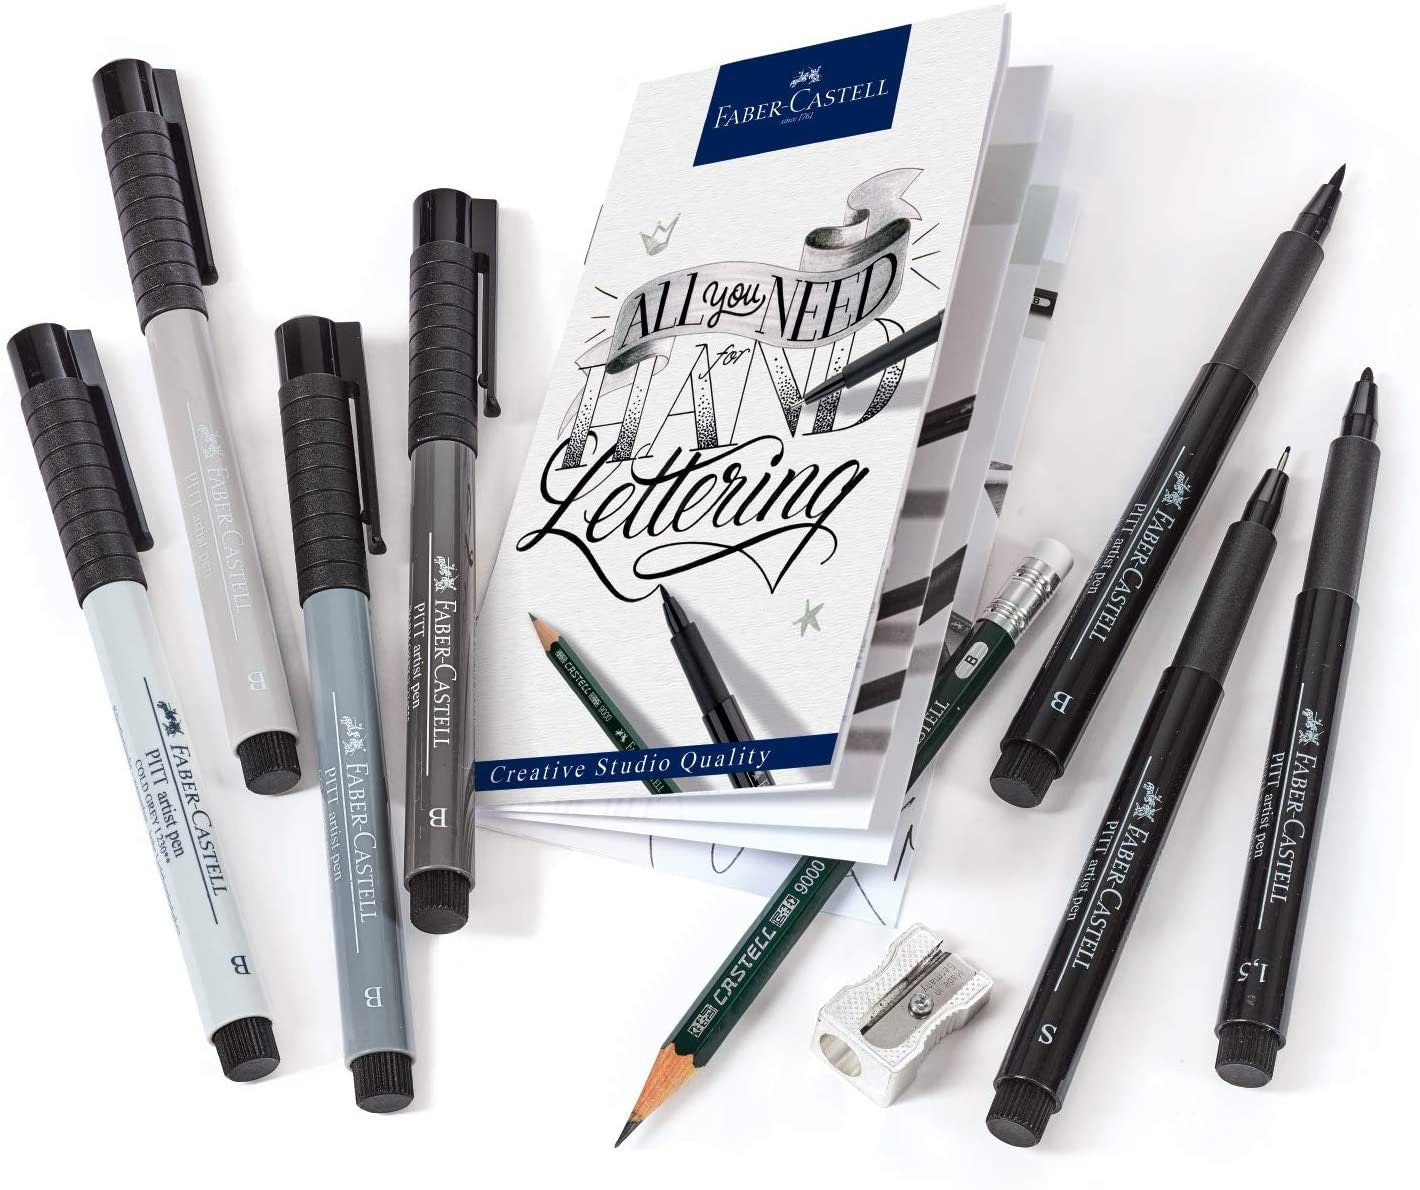 Faber-Castell Pitt Artist Pen Hand Lettering Sets